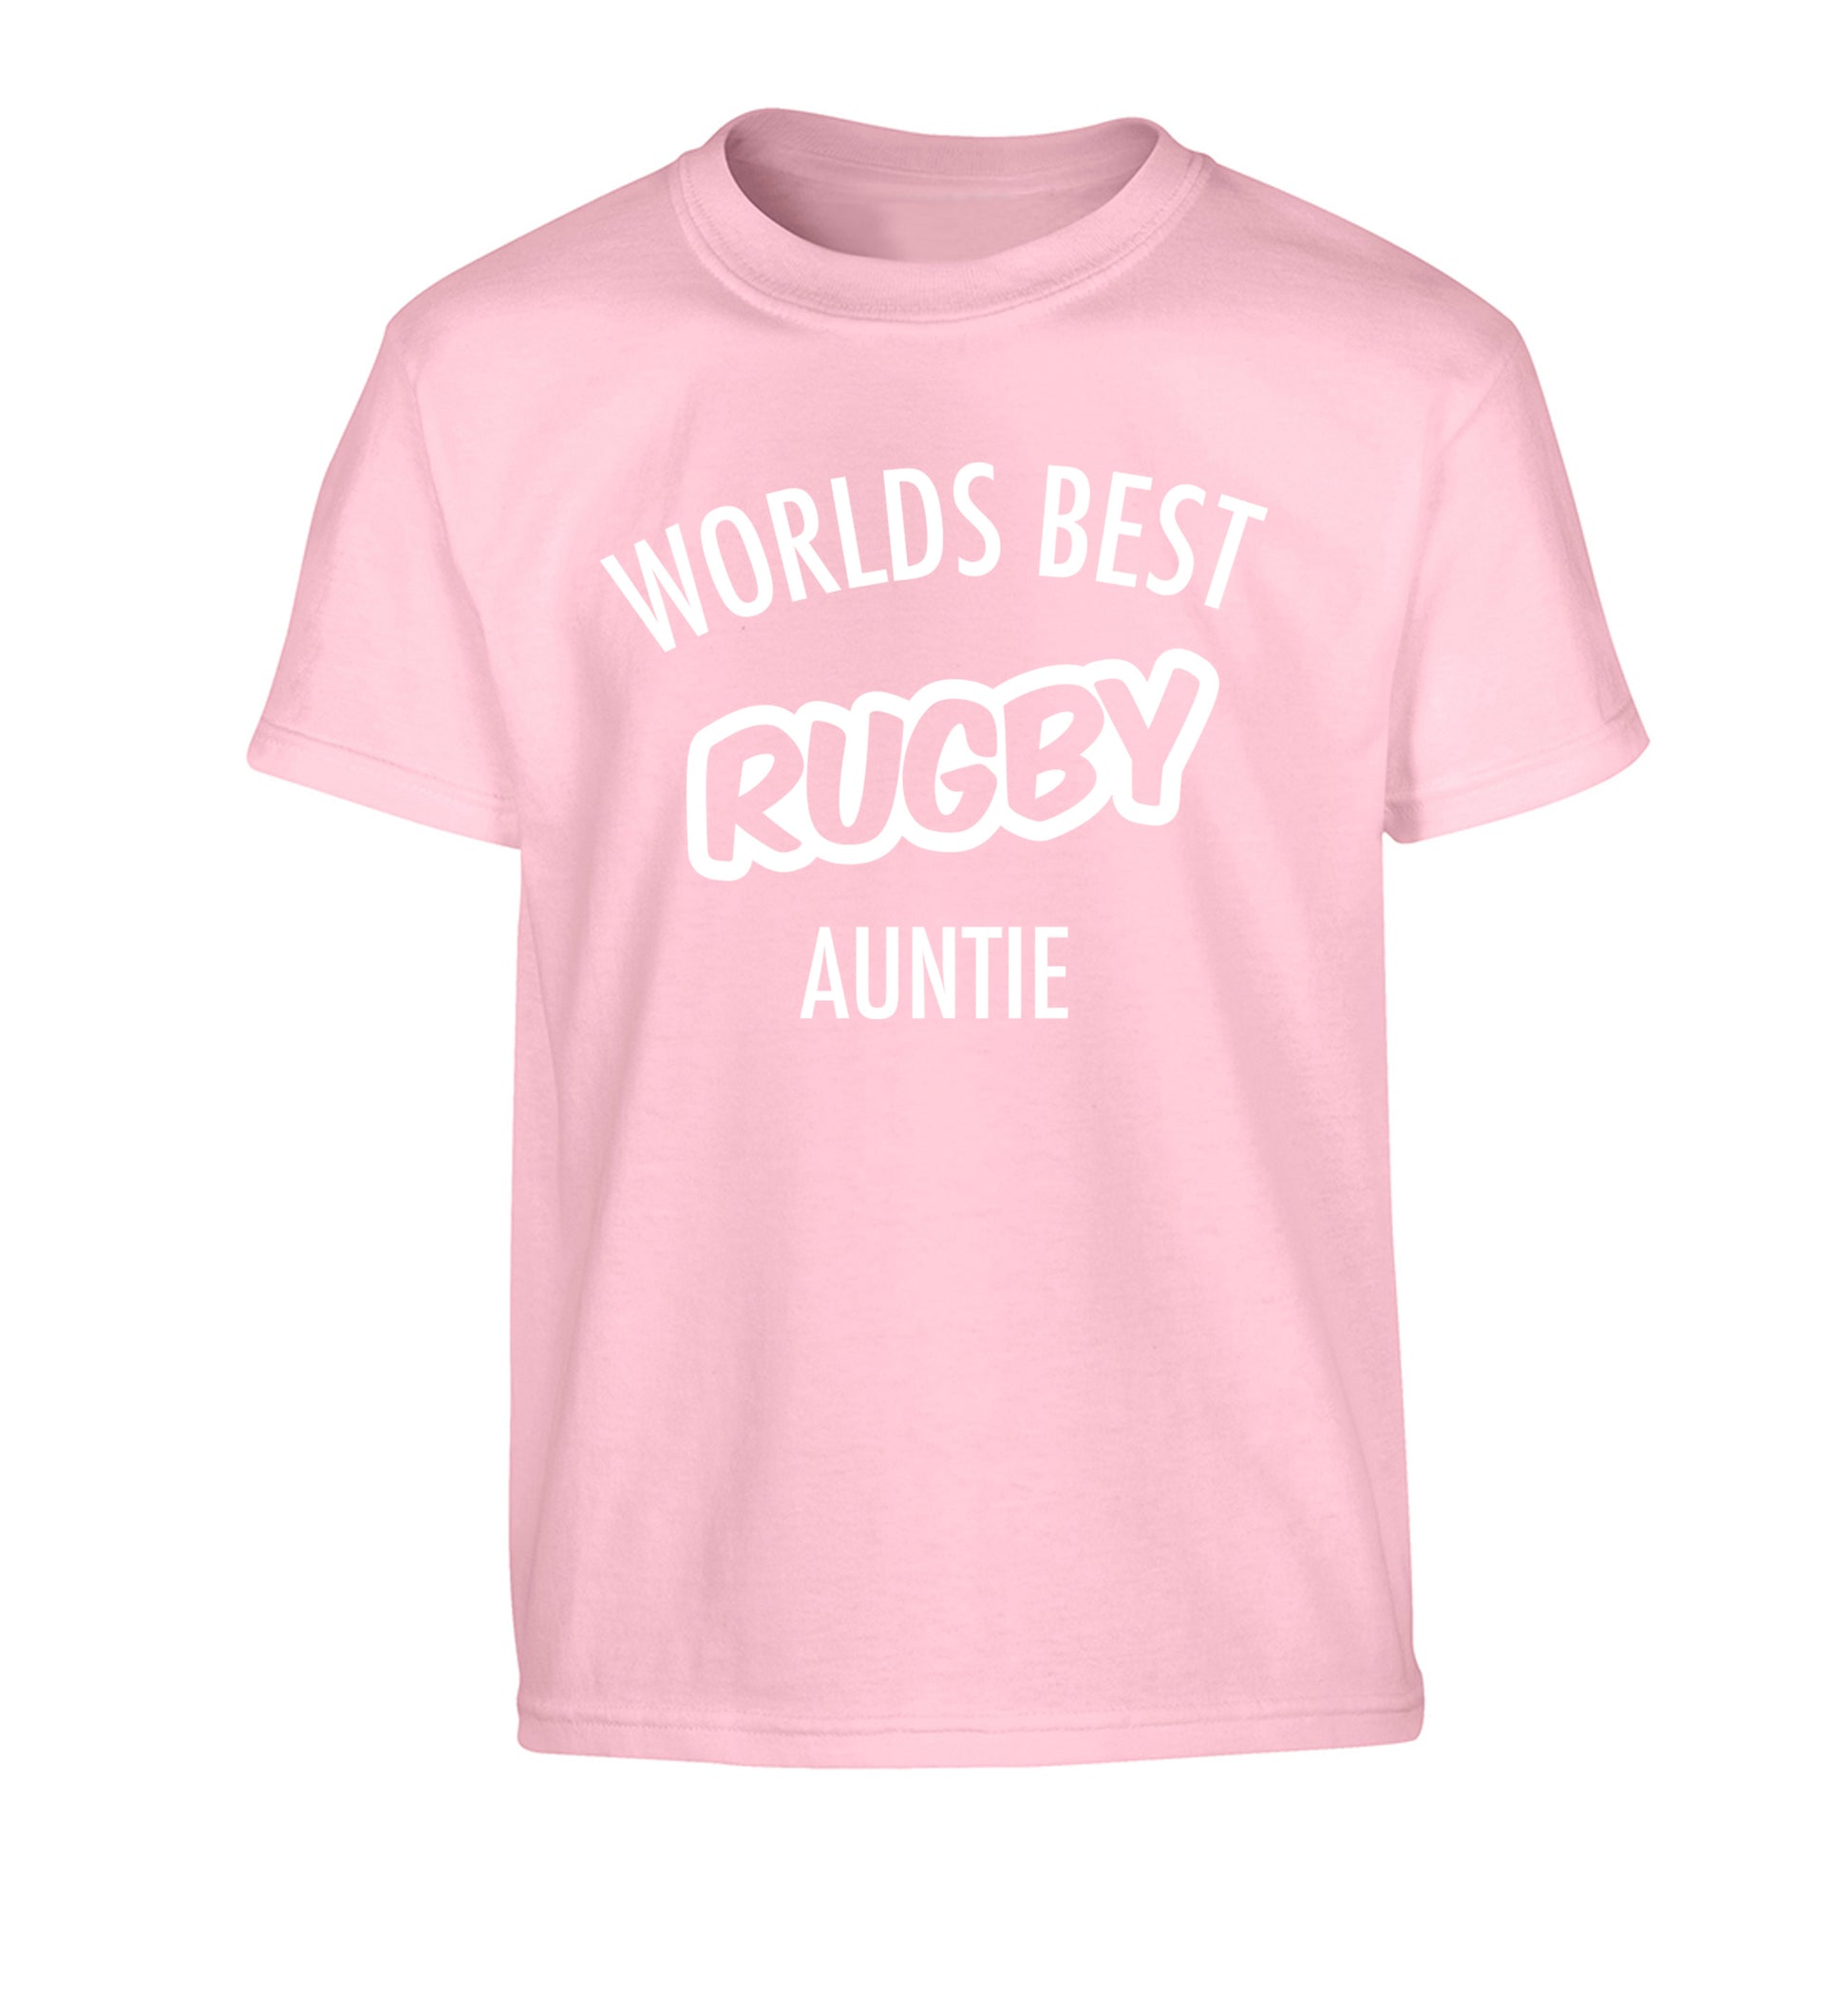 Worlds best rugby auntie Children's light pink Tshirt 12-13 Years